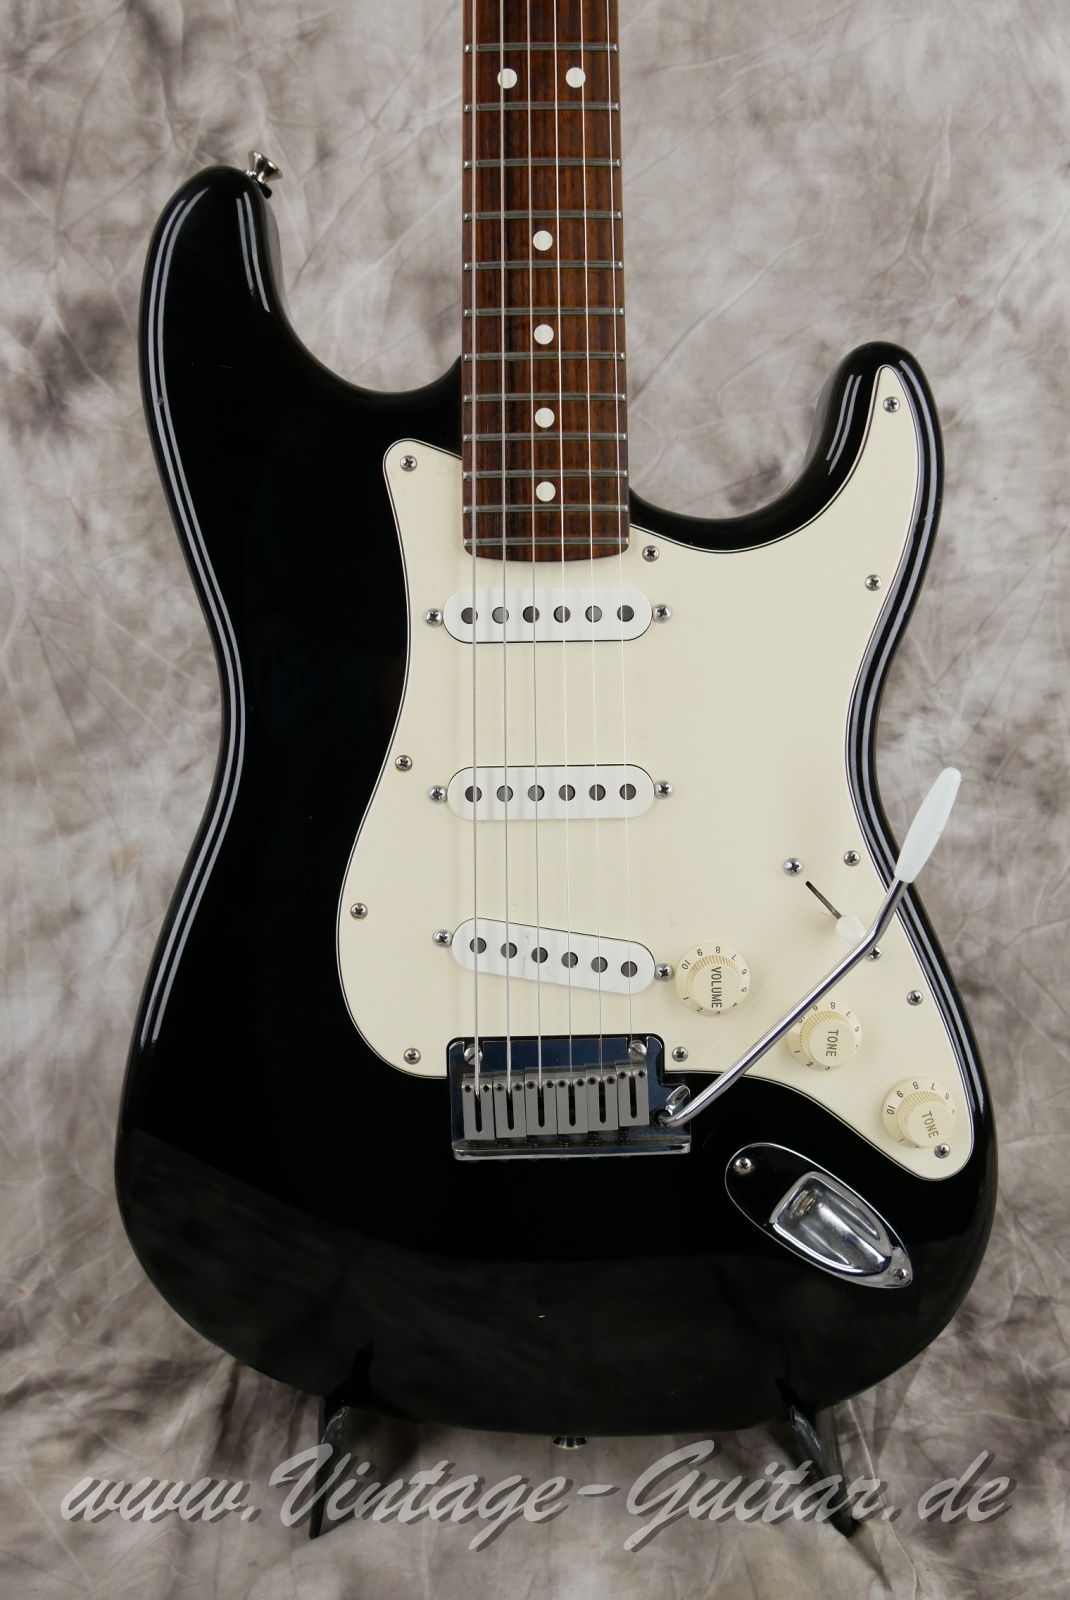 Fender-Stratocaster-American-Standard-1987-black-002.JPG